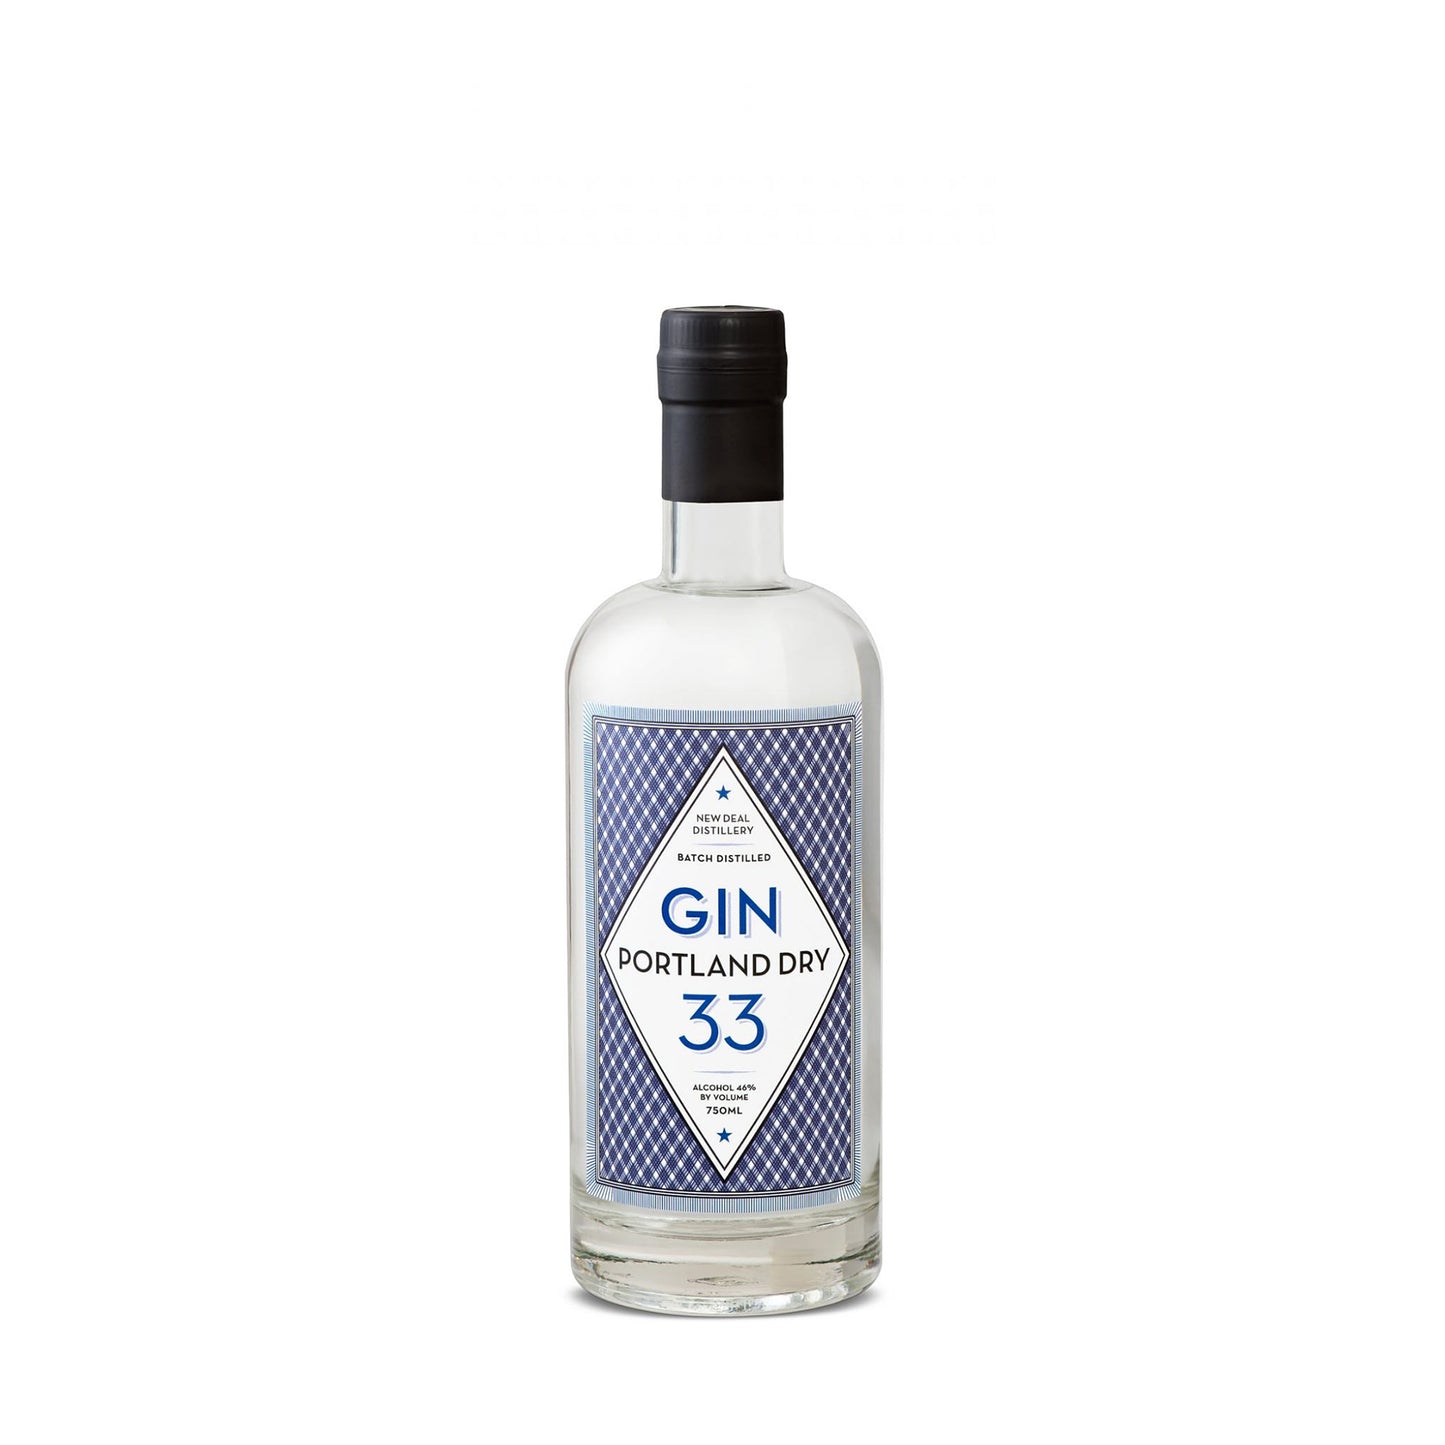 Portland Dry Gin 33